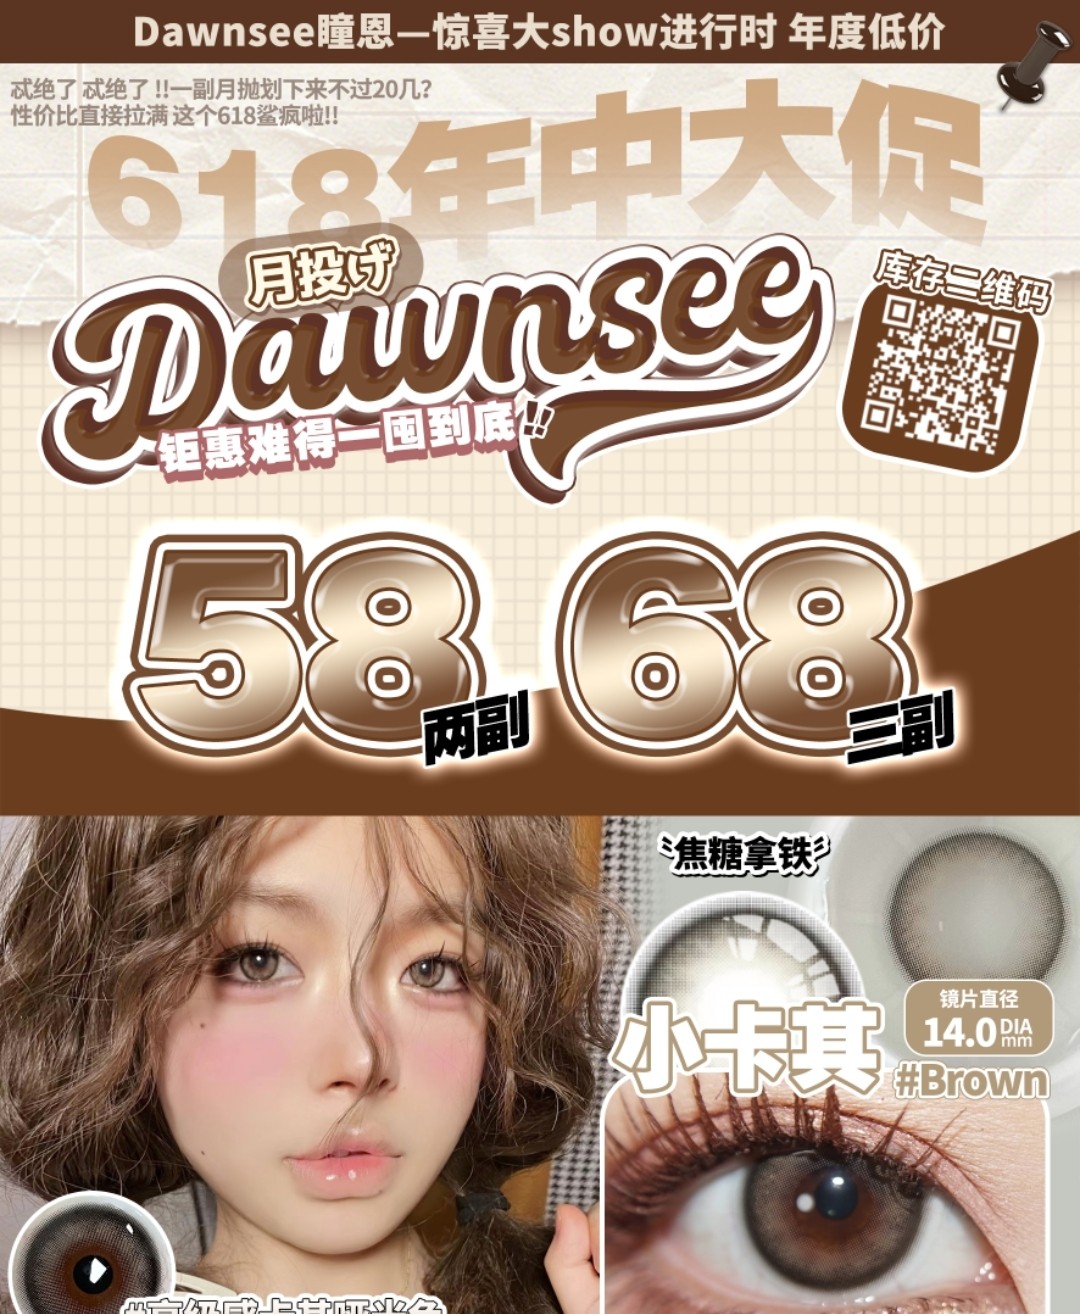 【月抛】Dawnsee 惊喜大show进行时 年度低价